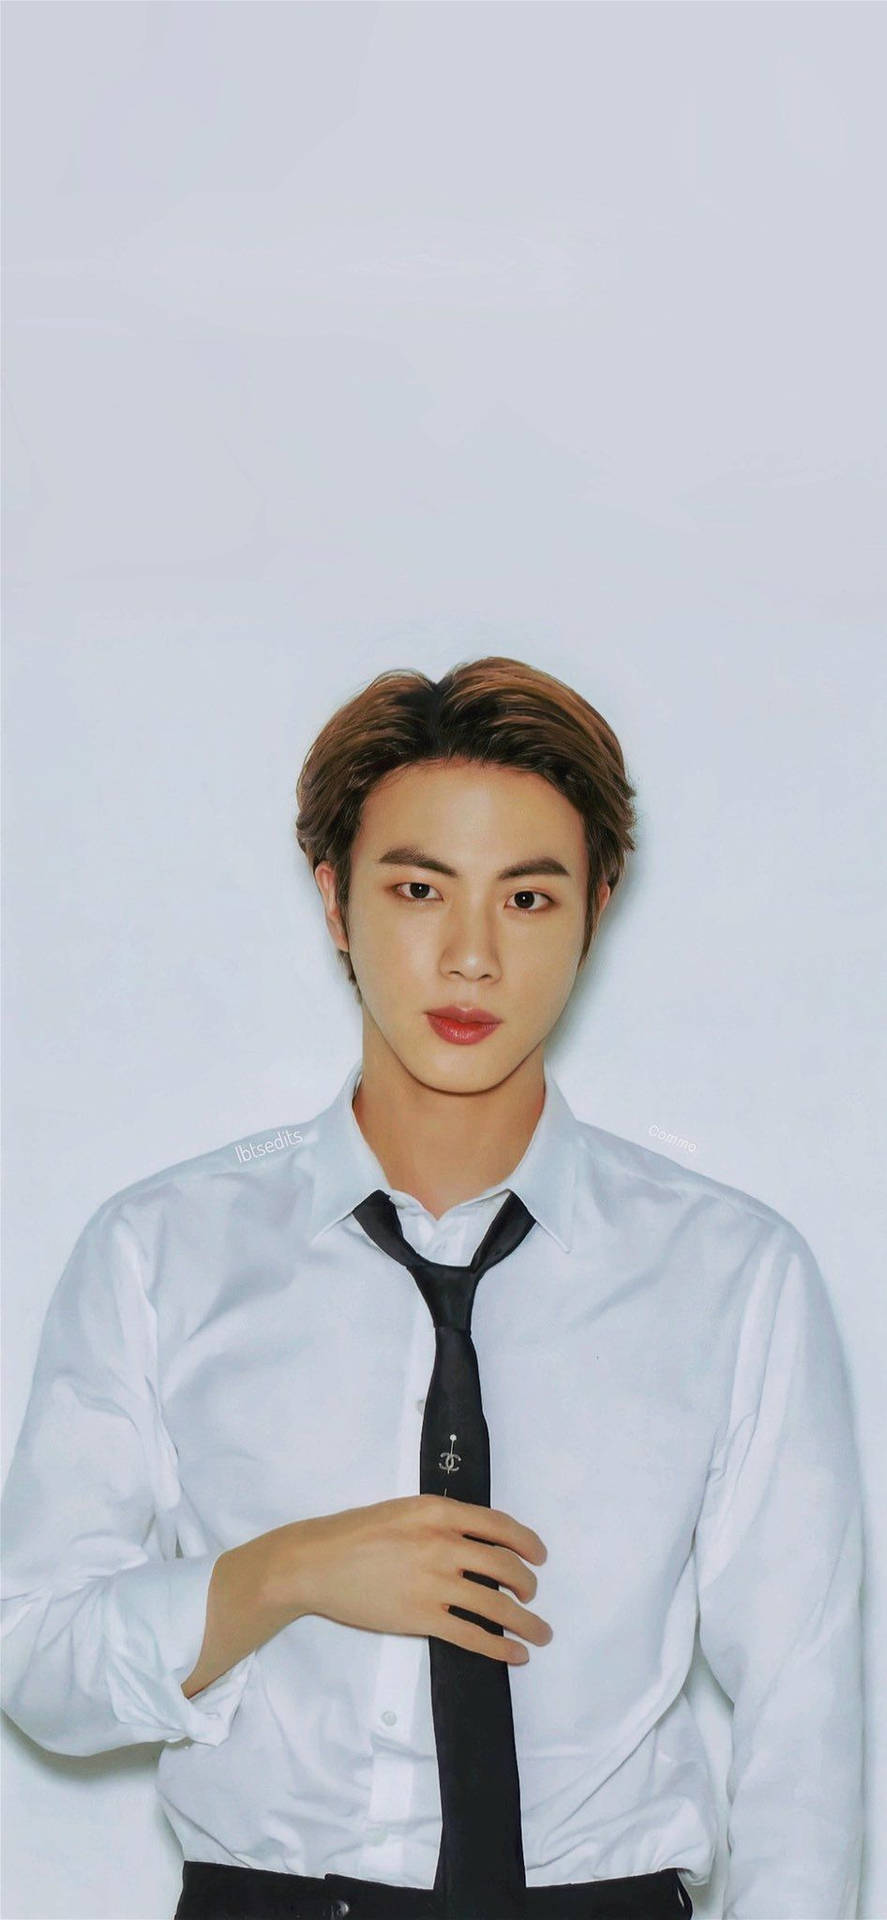 Kim Seok Jin In Black Tie Background